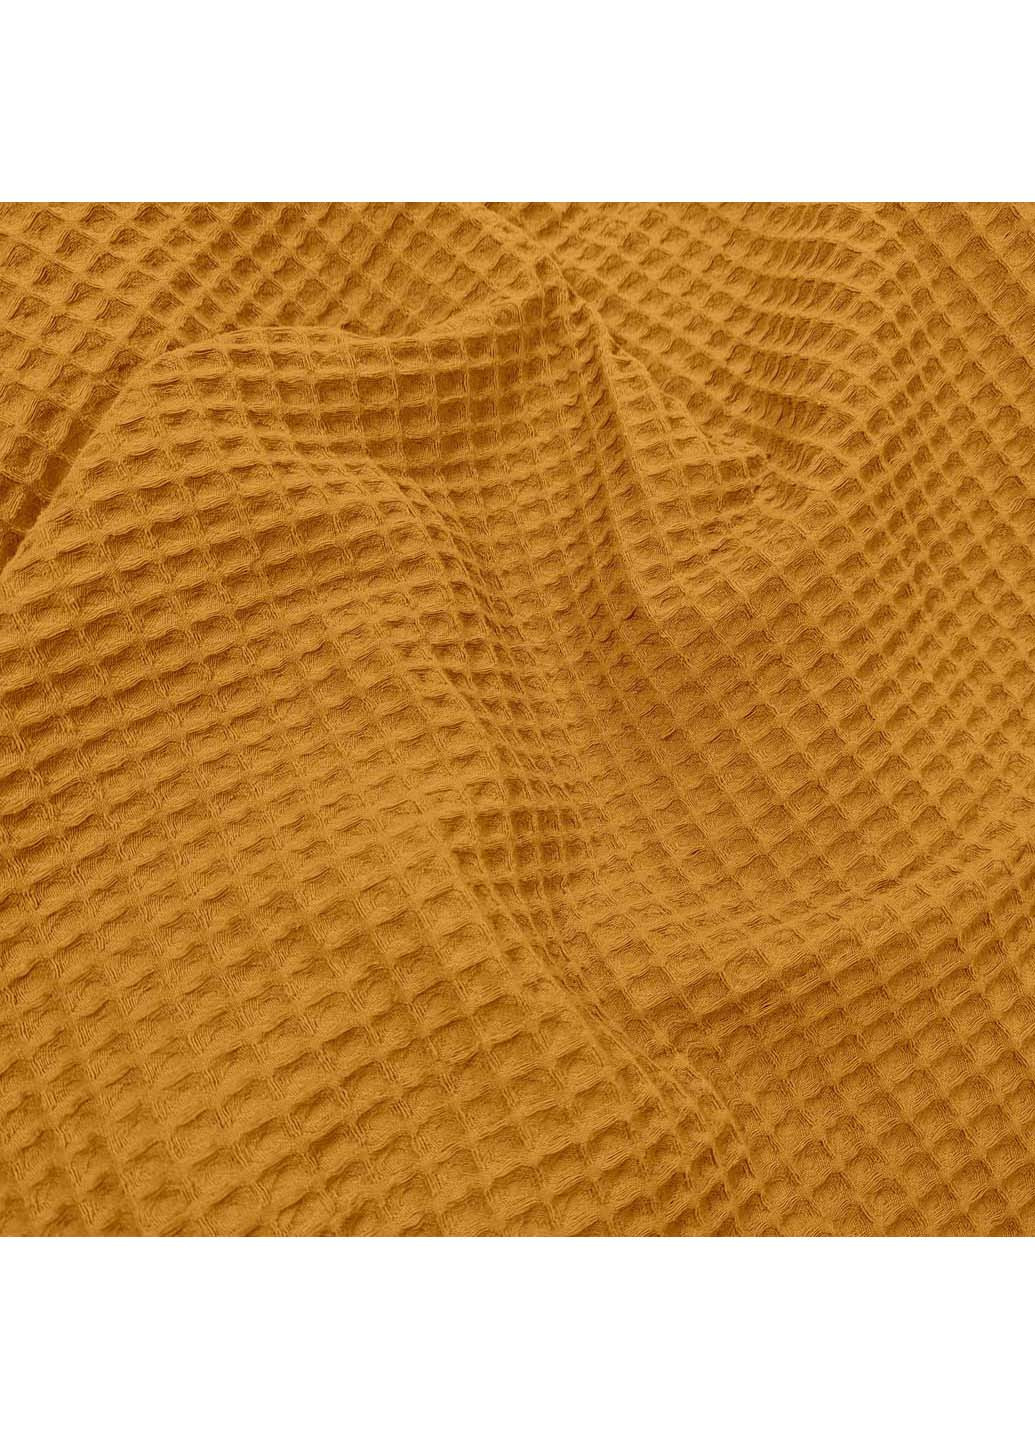 Cosas полотенце greek waffle 75x95 см золотой производство -